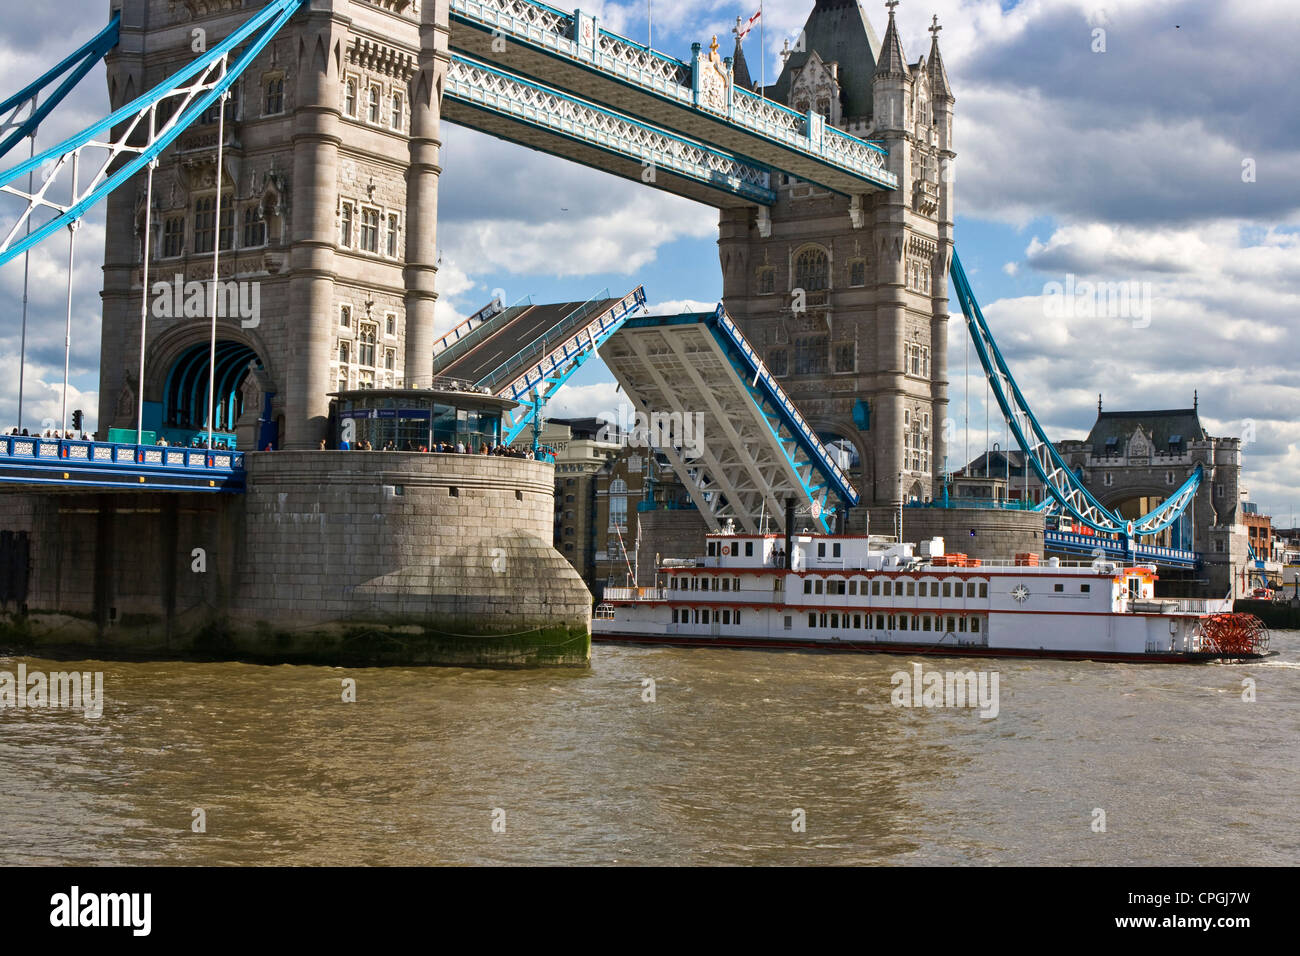 Vacancier touristiques river cruiser bateau à vapeur passant sous ouvrir 1 e année énumérés le Tower Bridge Londres Angleterre Europe Banque D'Images